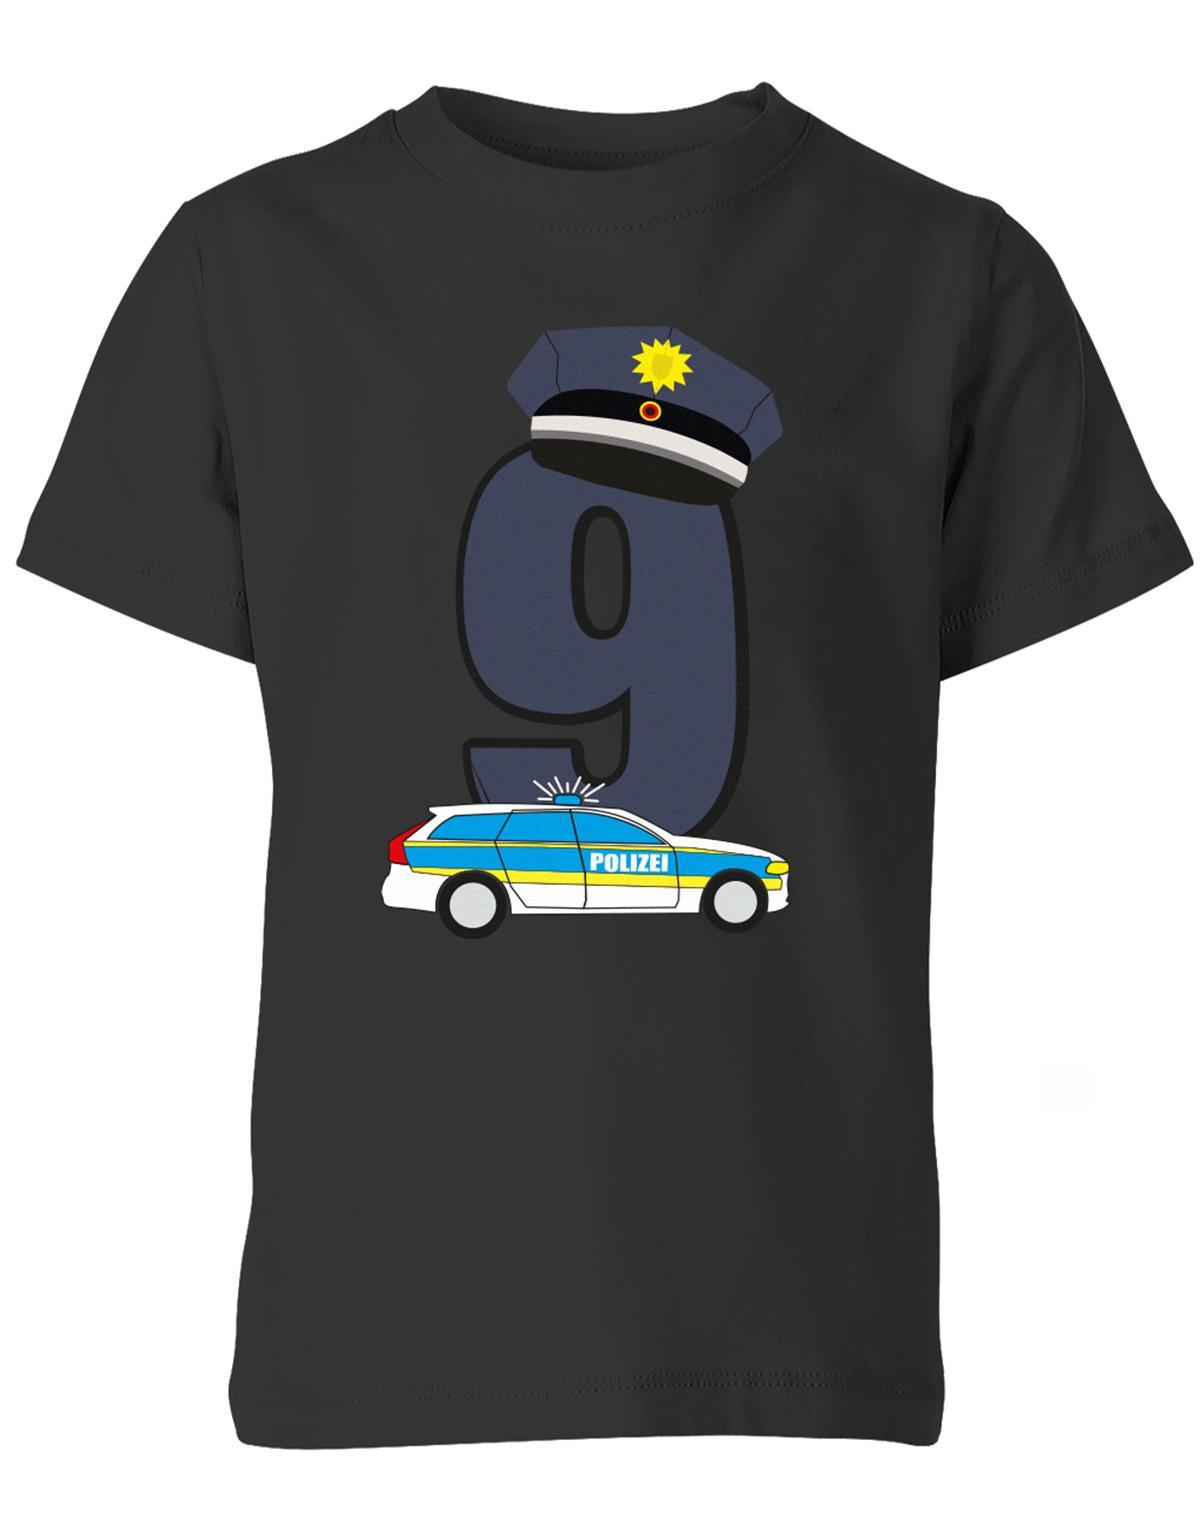 ich-bin-9-polizei-geburtstag-kinder-shirt-schwarz